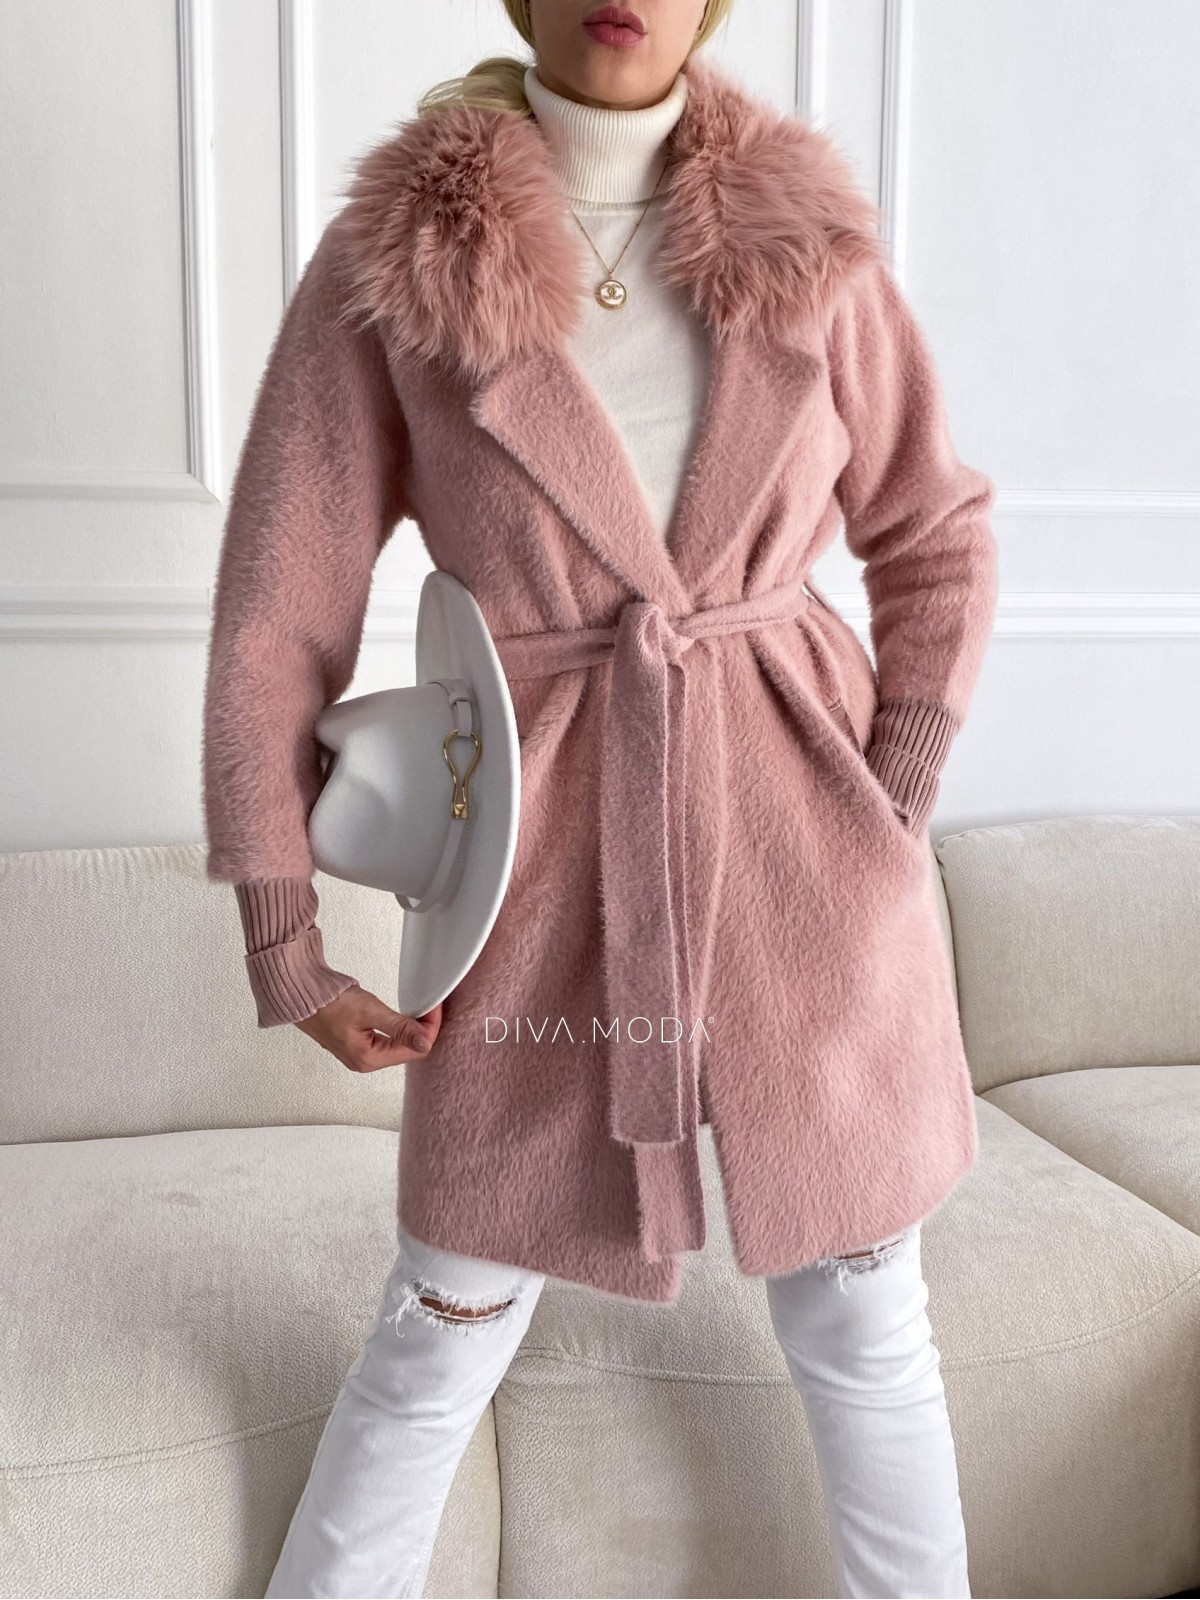 Alpaka kabát s kožešinou a páskem pudrově růžový S 68